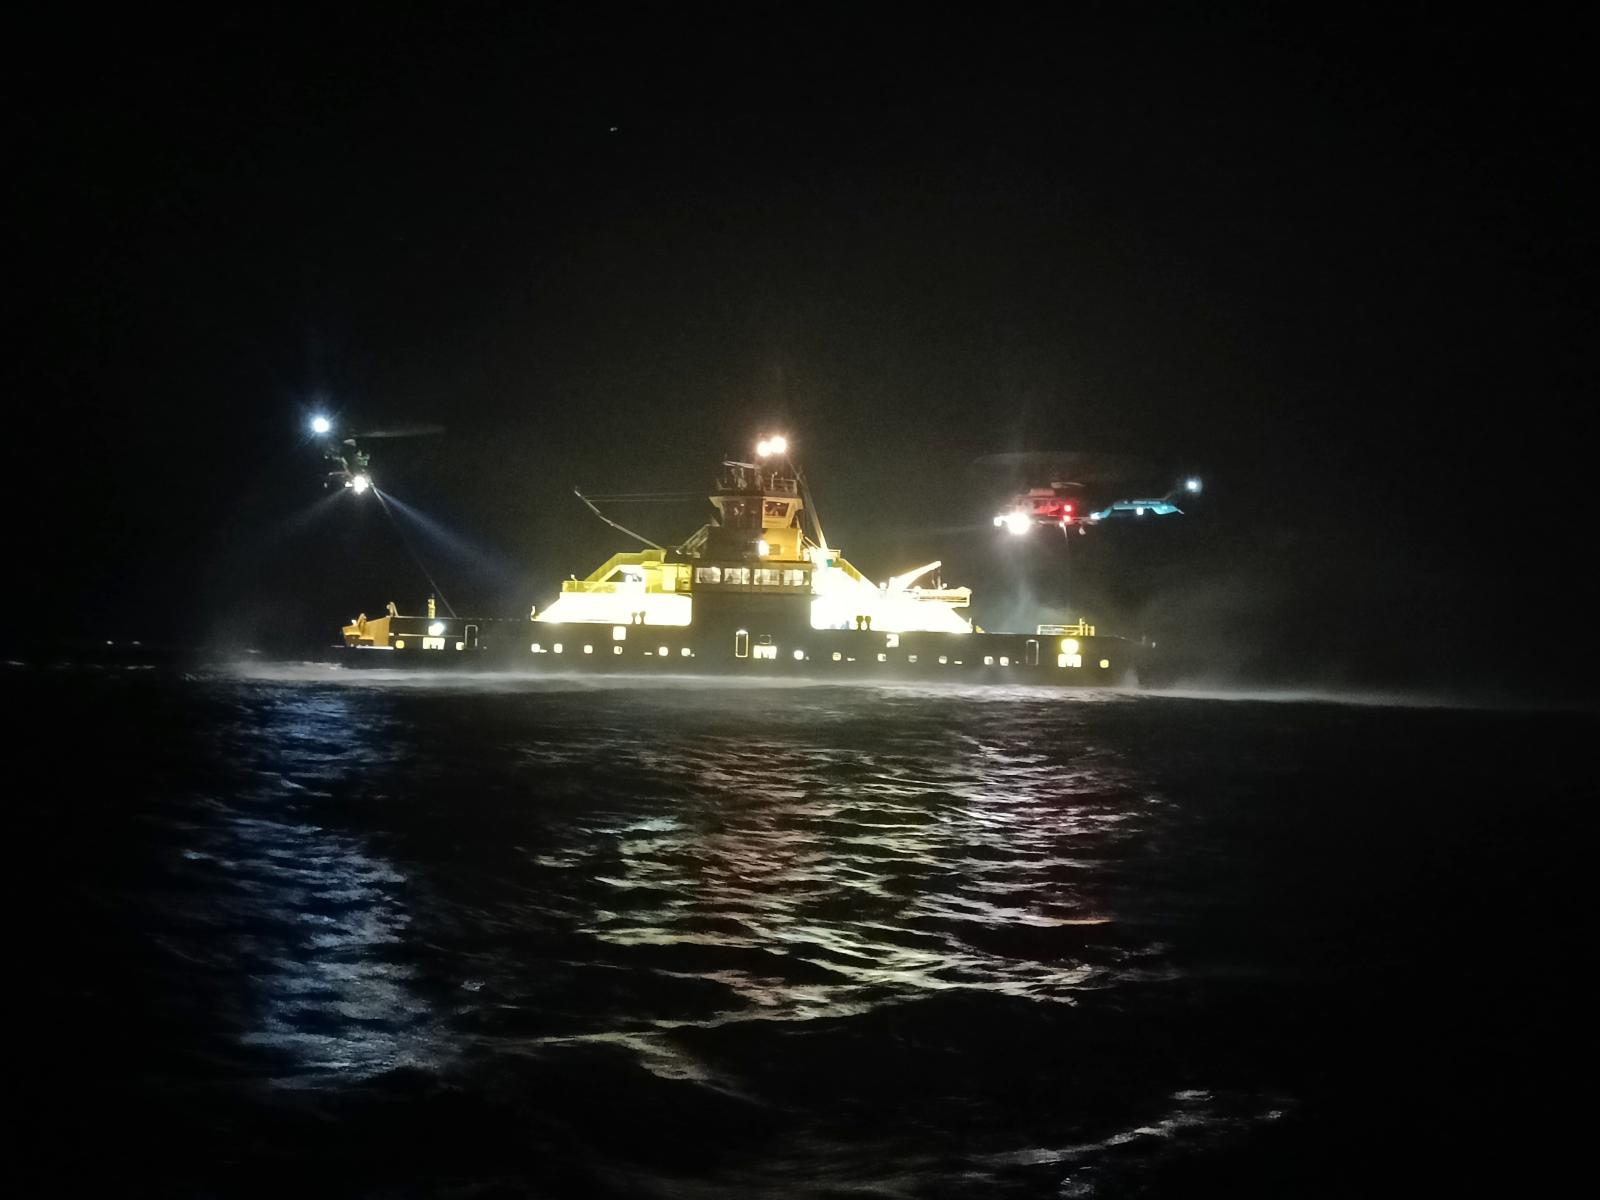 Vartiolaiva pimeällä merellä, yläpuolella kaksi helikopteria vinssaamassa.